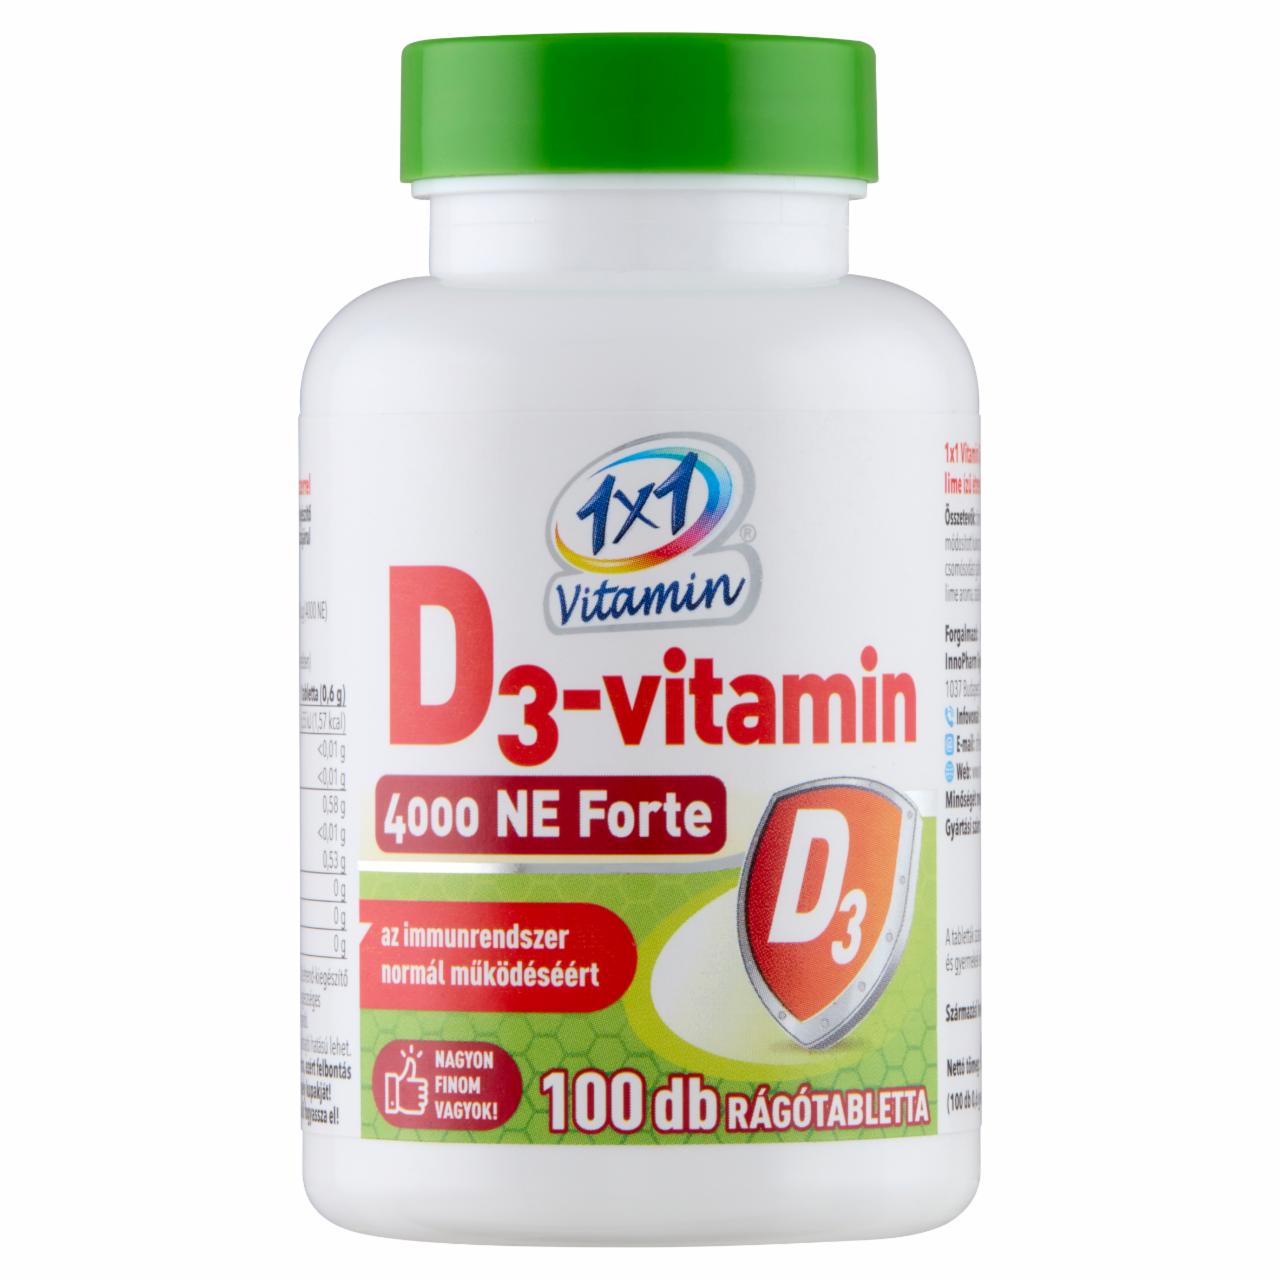 Képek - 1x1 Vitamin D3-vitamin 4000 NE Forte lime ízű étrend-kiegészítő rágótabletta 100 x 0,6 g (60 g)